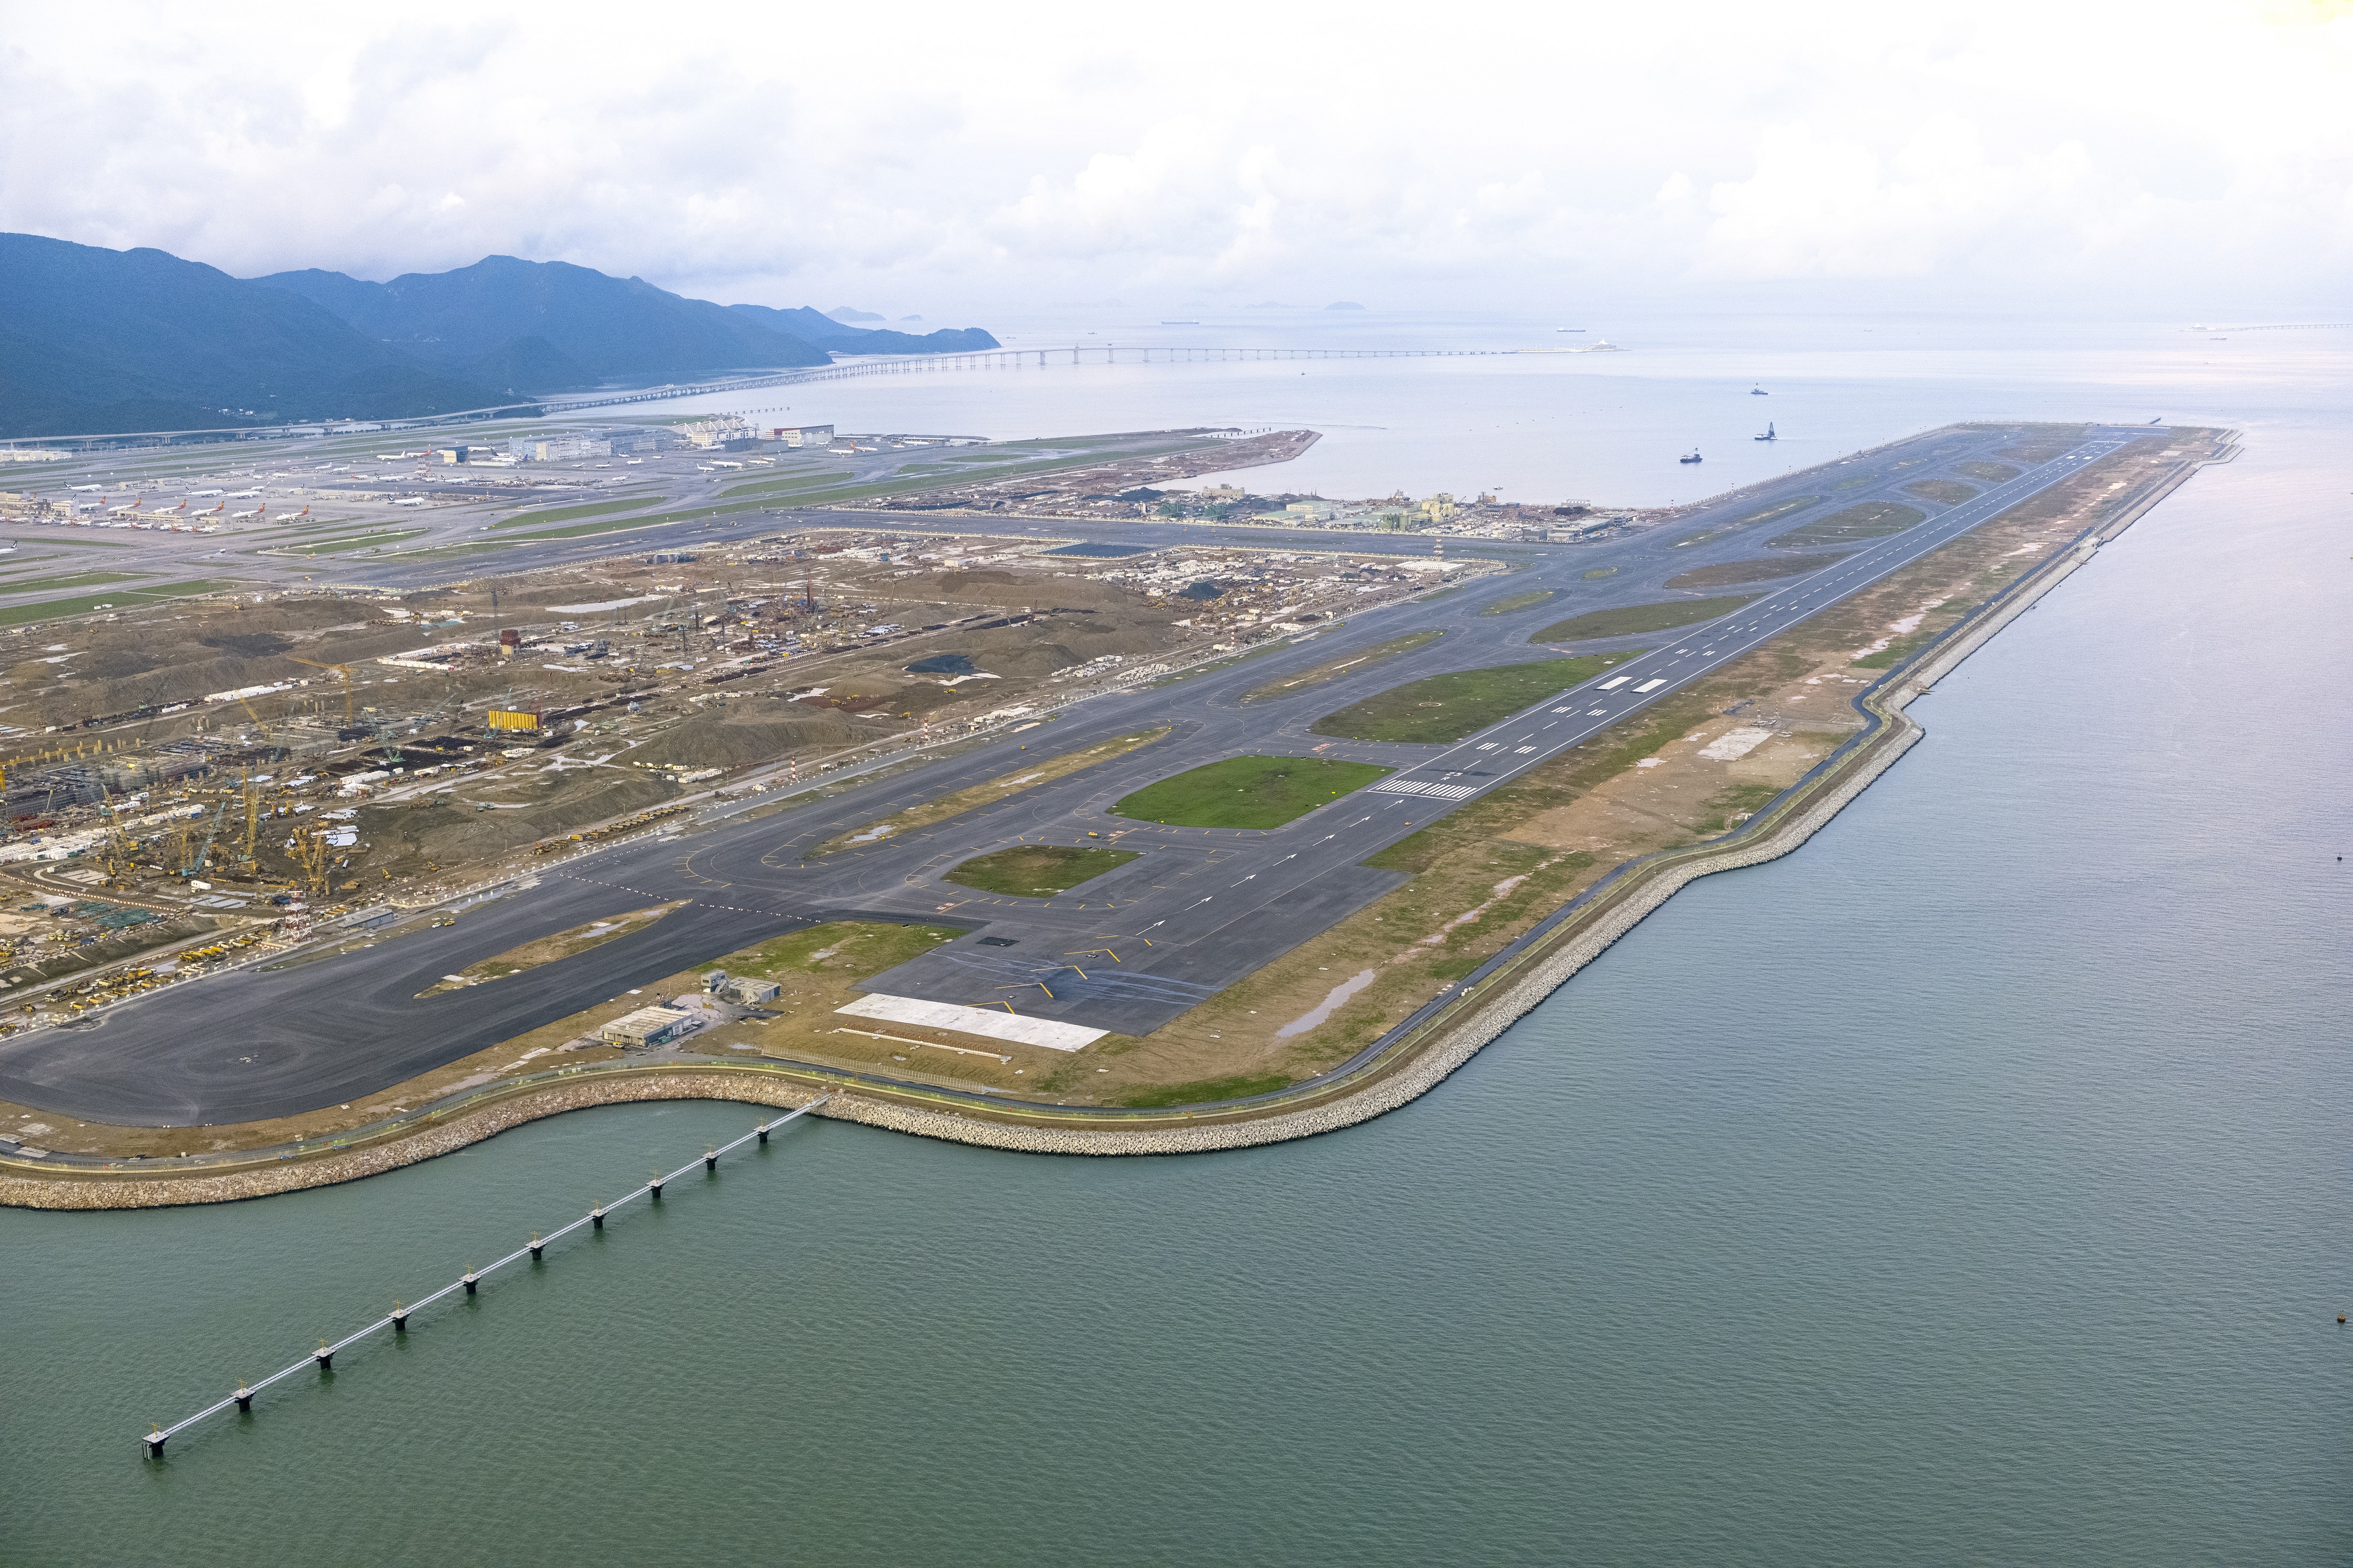 Hong Kong Internatioal Airport third runway Cathay Pacific B747-400F freighter aircraft